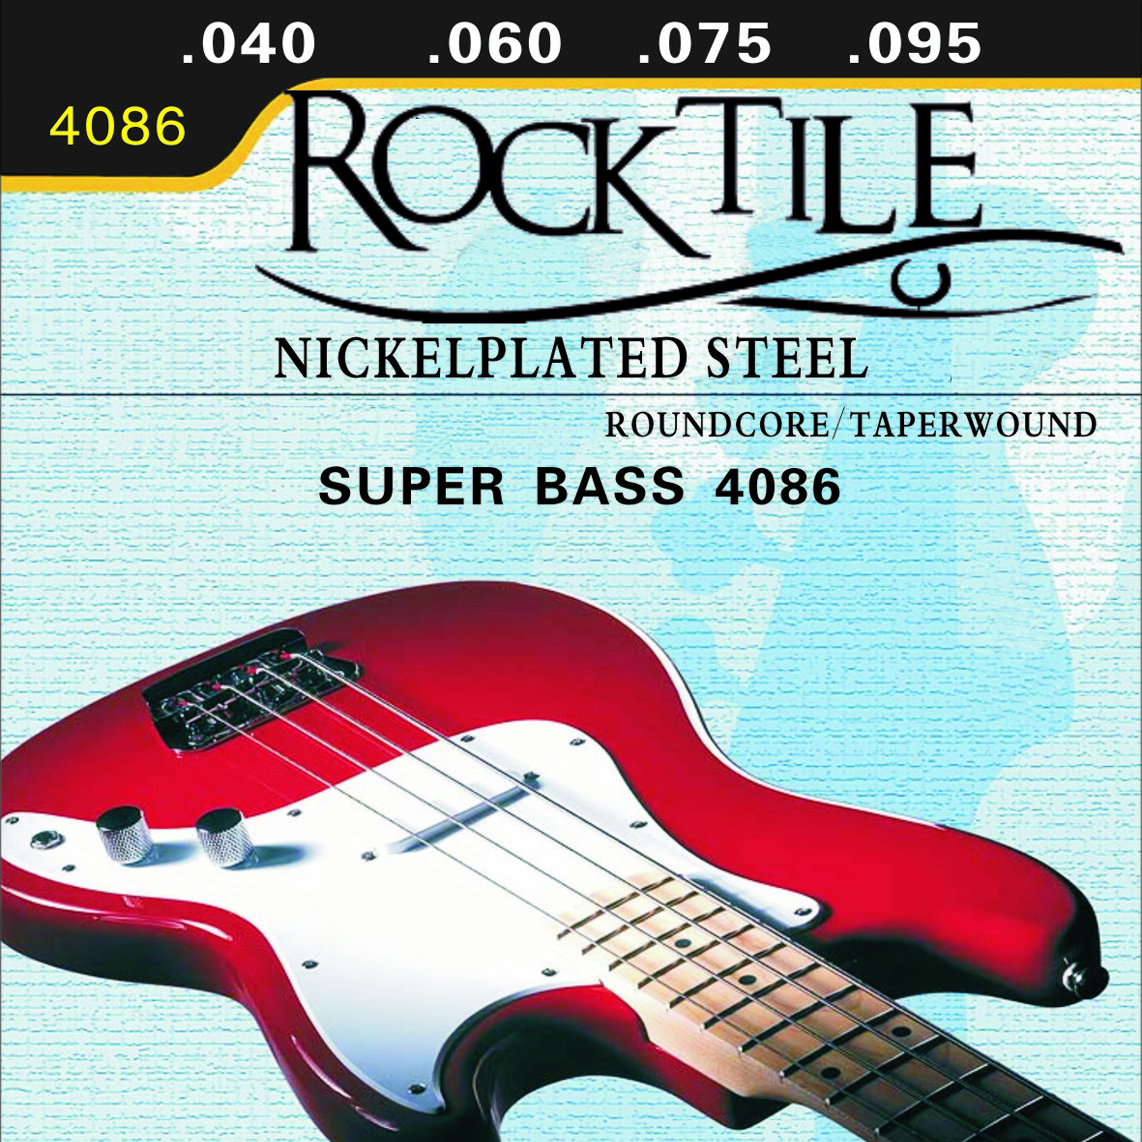 Rocktile - struny na basgitaru, 040 | Obrázok 1 | eplay.sk